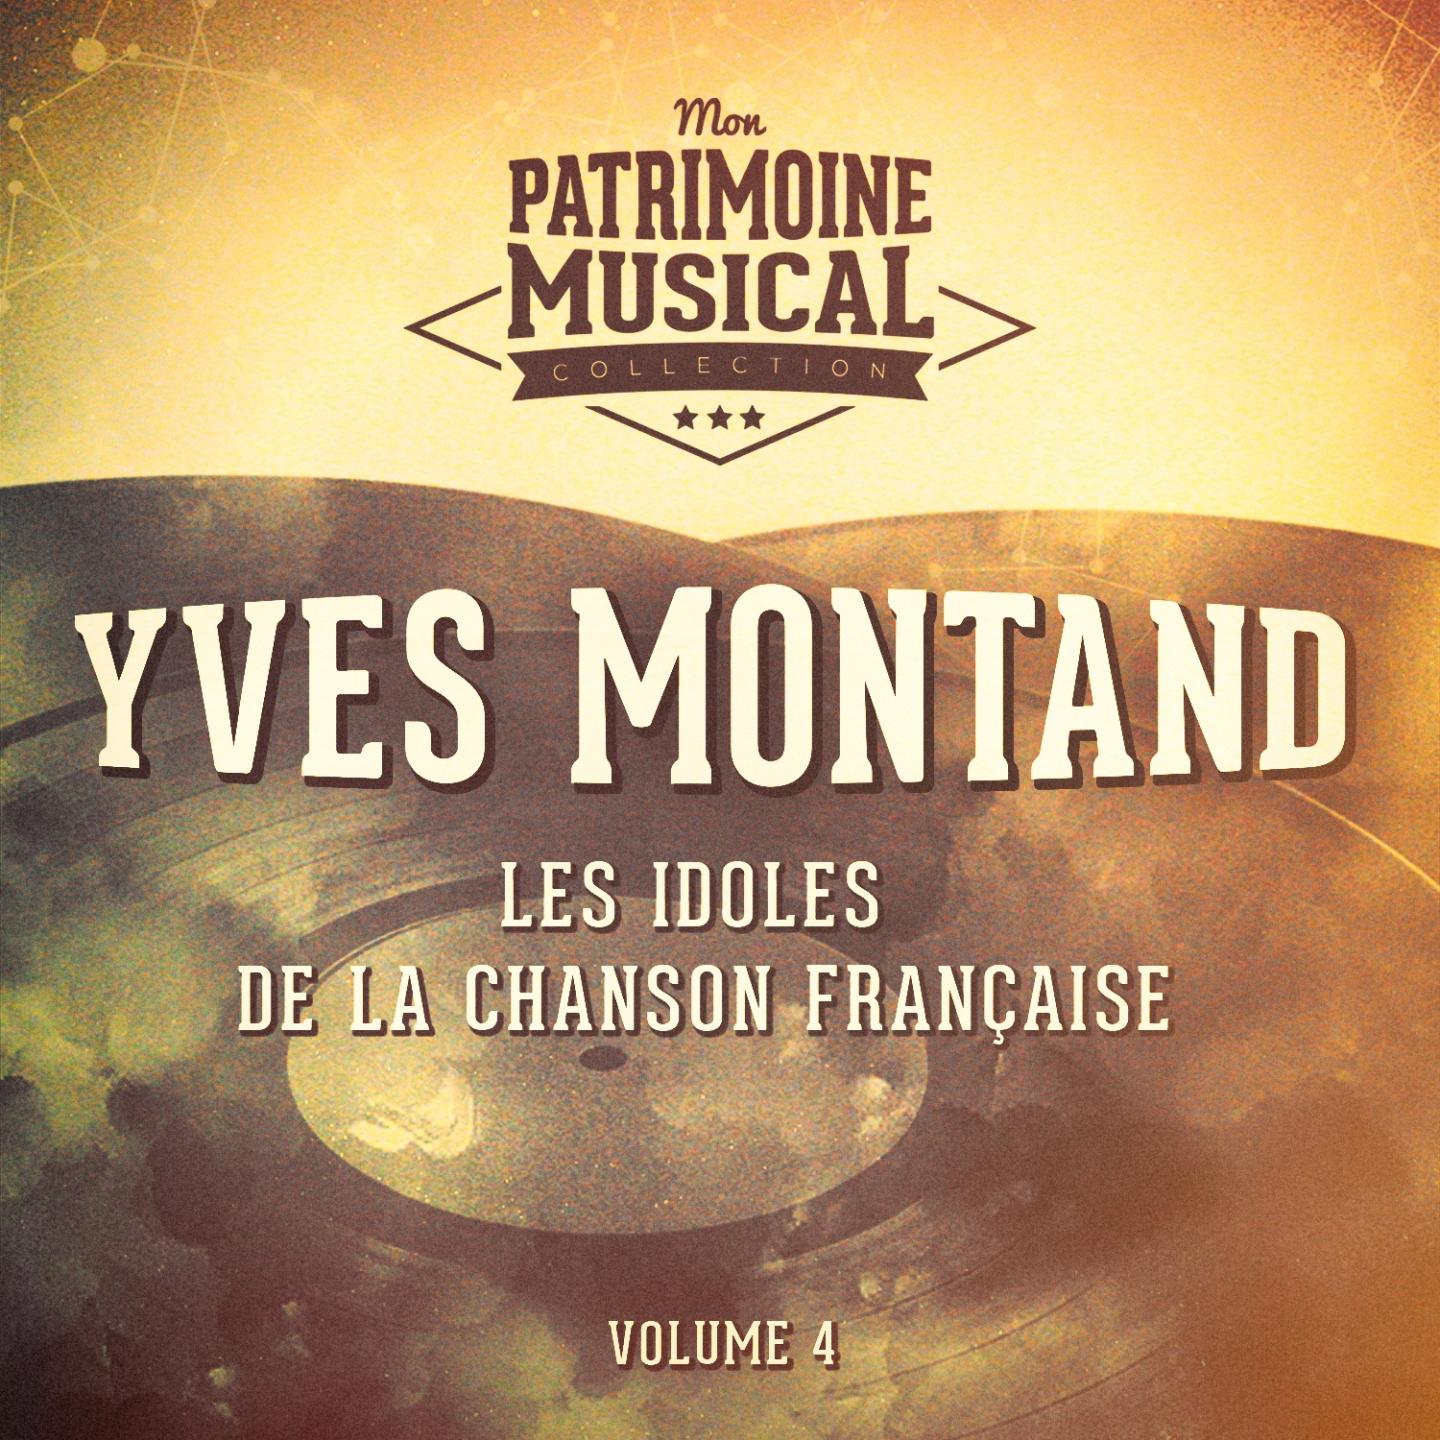 Les idoles de la chanson fran aise : Yves Montand, Vol. 4